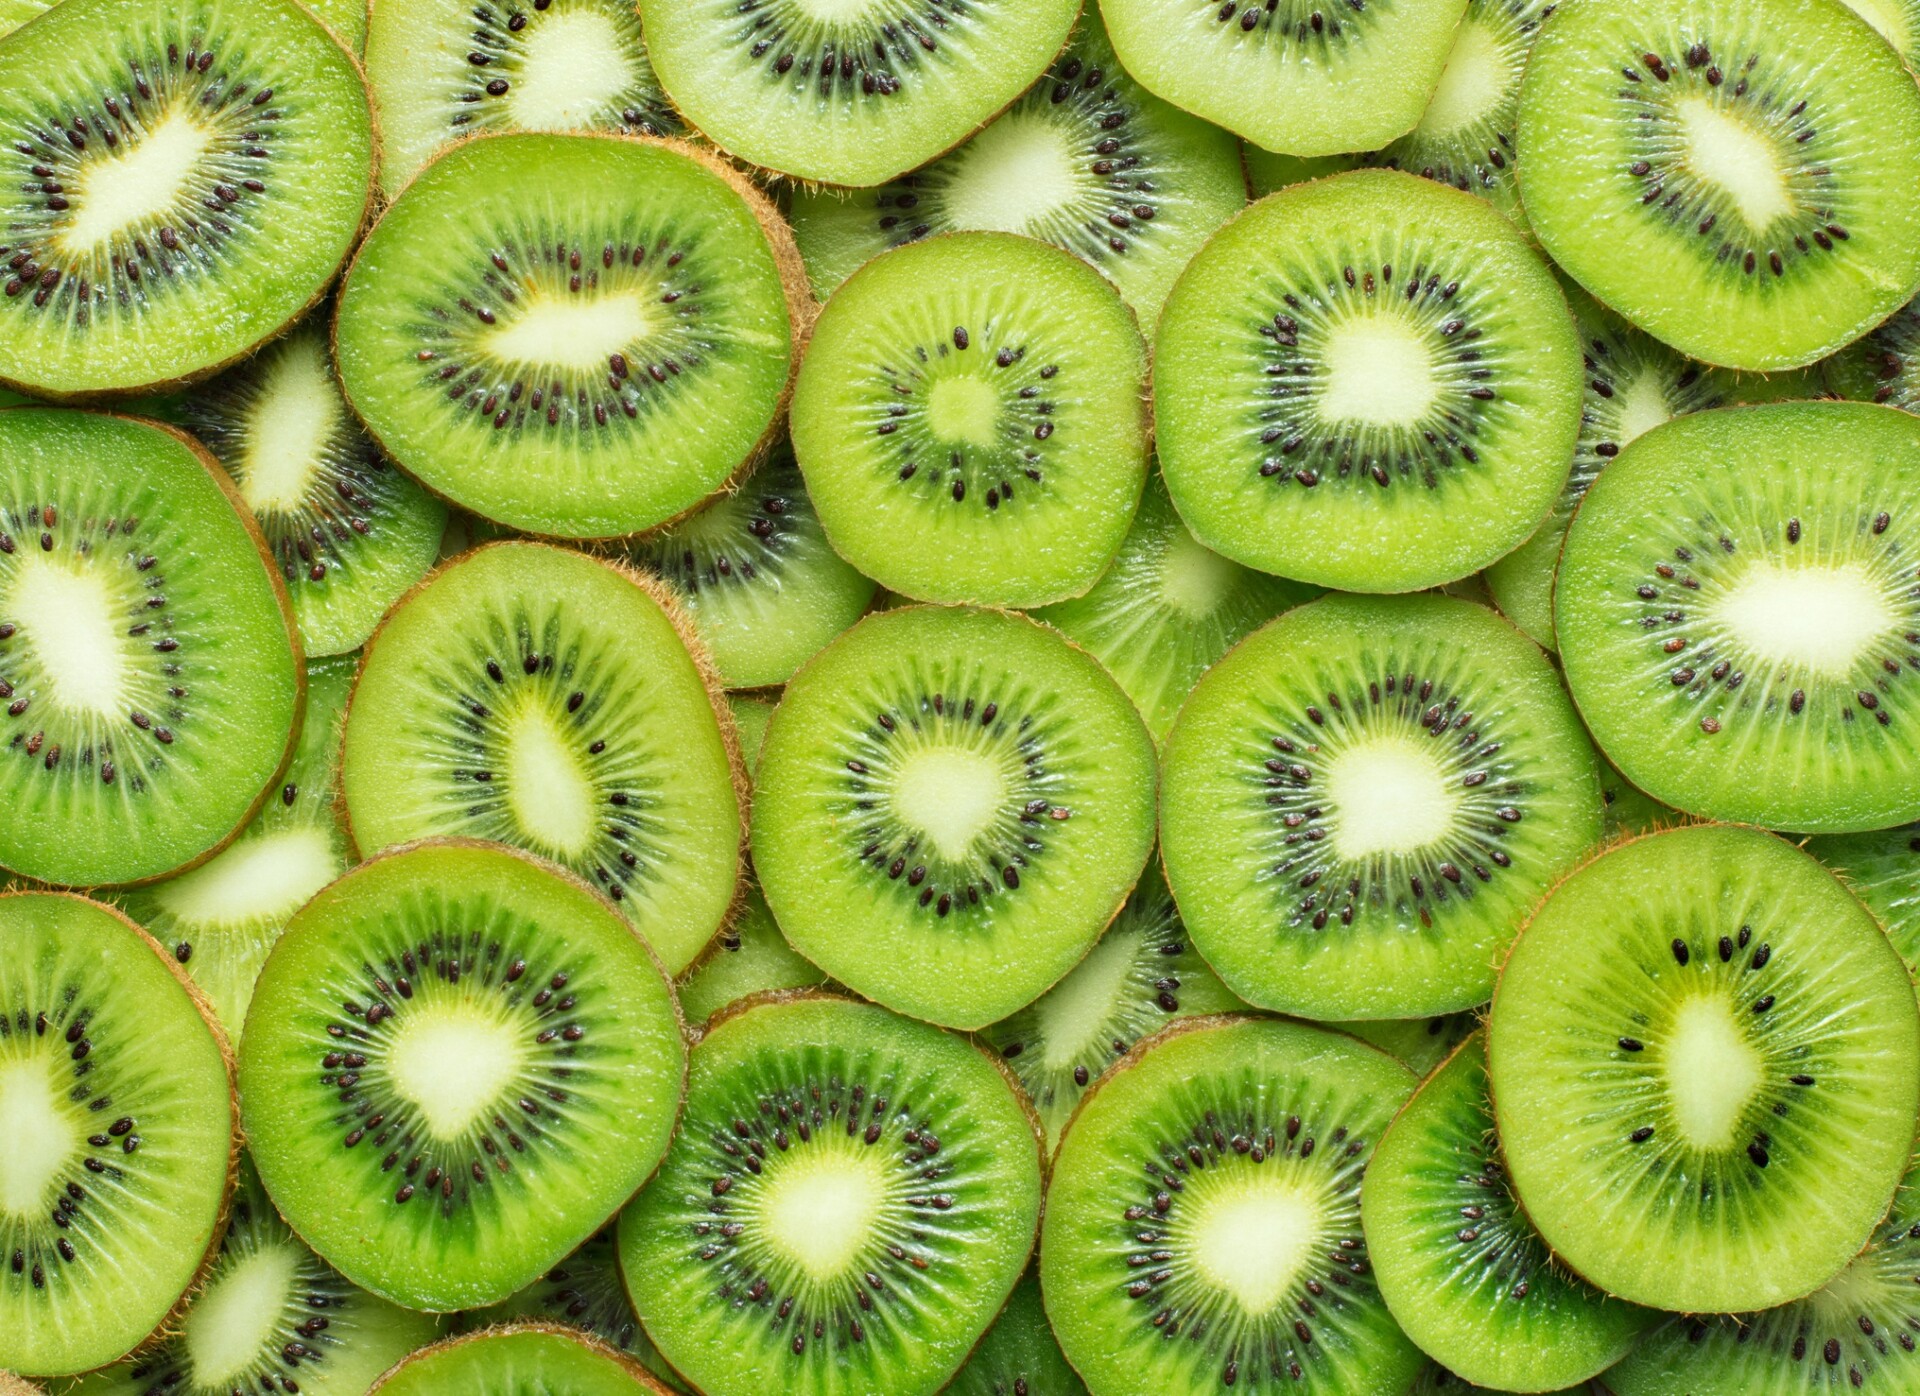 Nativo da China, o kiwi é uma das frutas com mais vitaminas, minerais e compostos vegetais poderosos